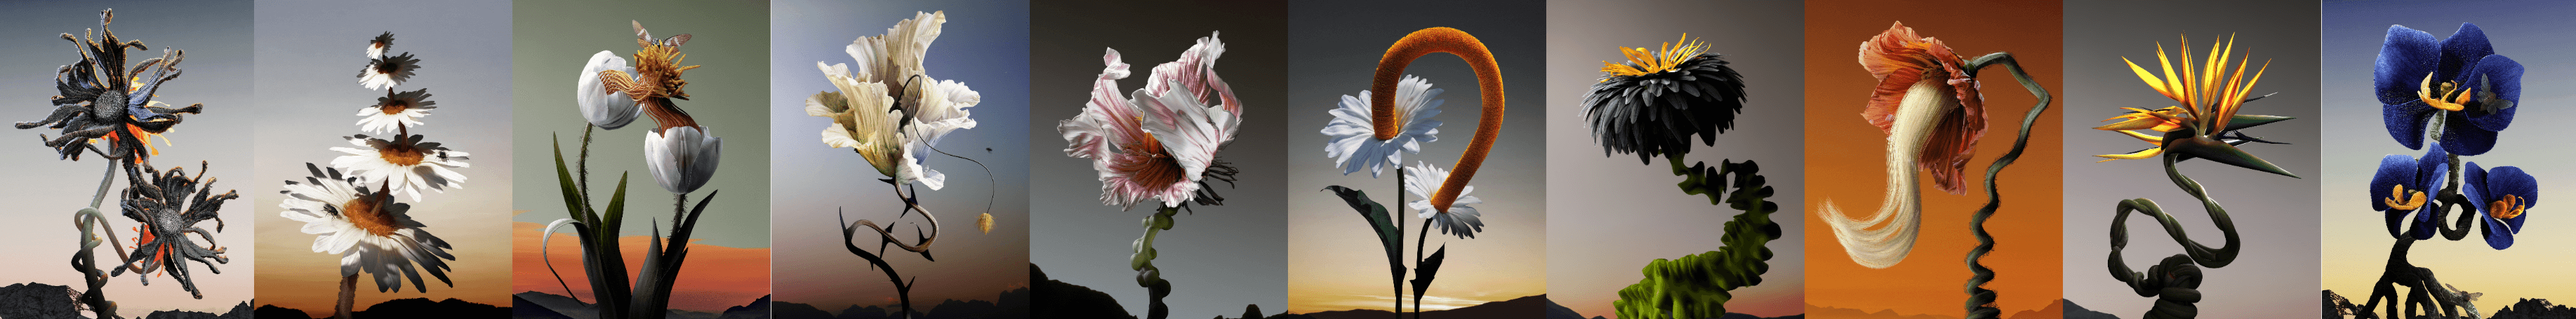 The Fleur by Ondrej Zunka